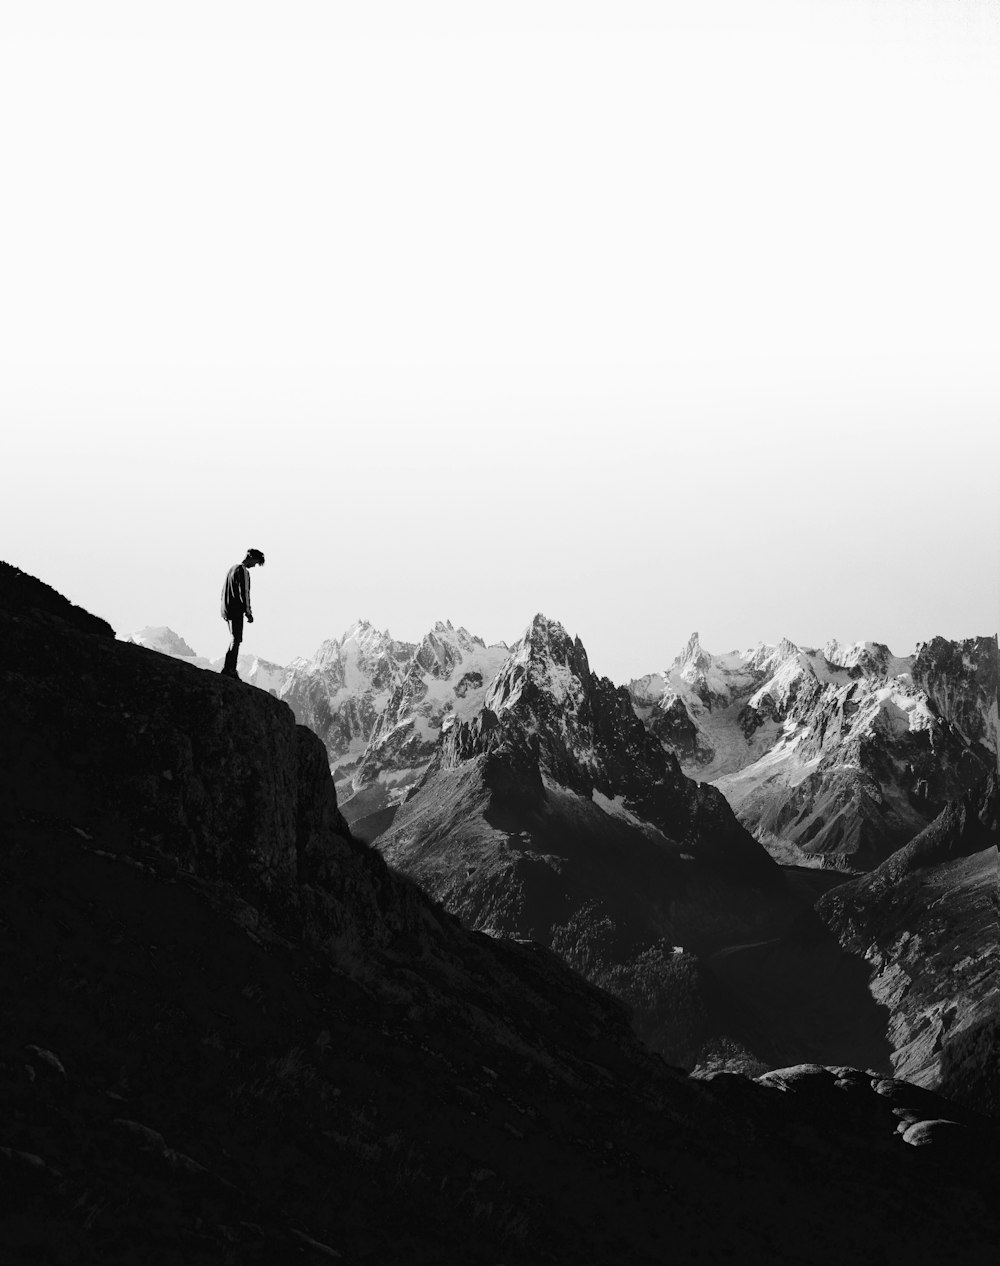 Silueta de la persona de pie en el acantilado frente a las montañas nevadas